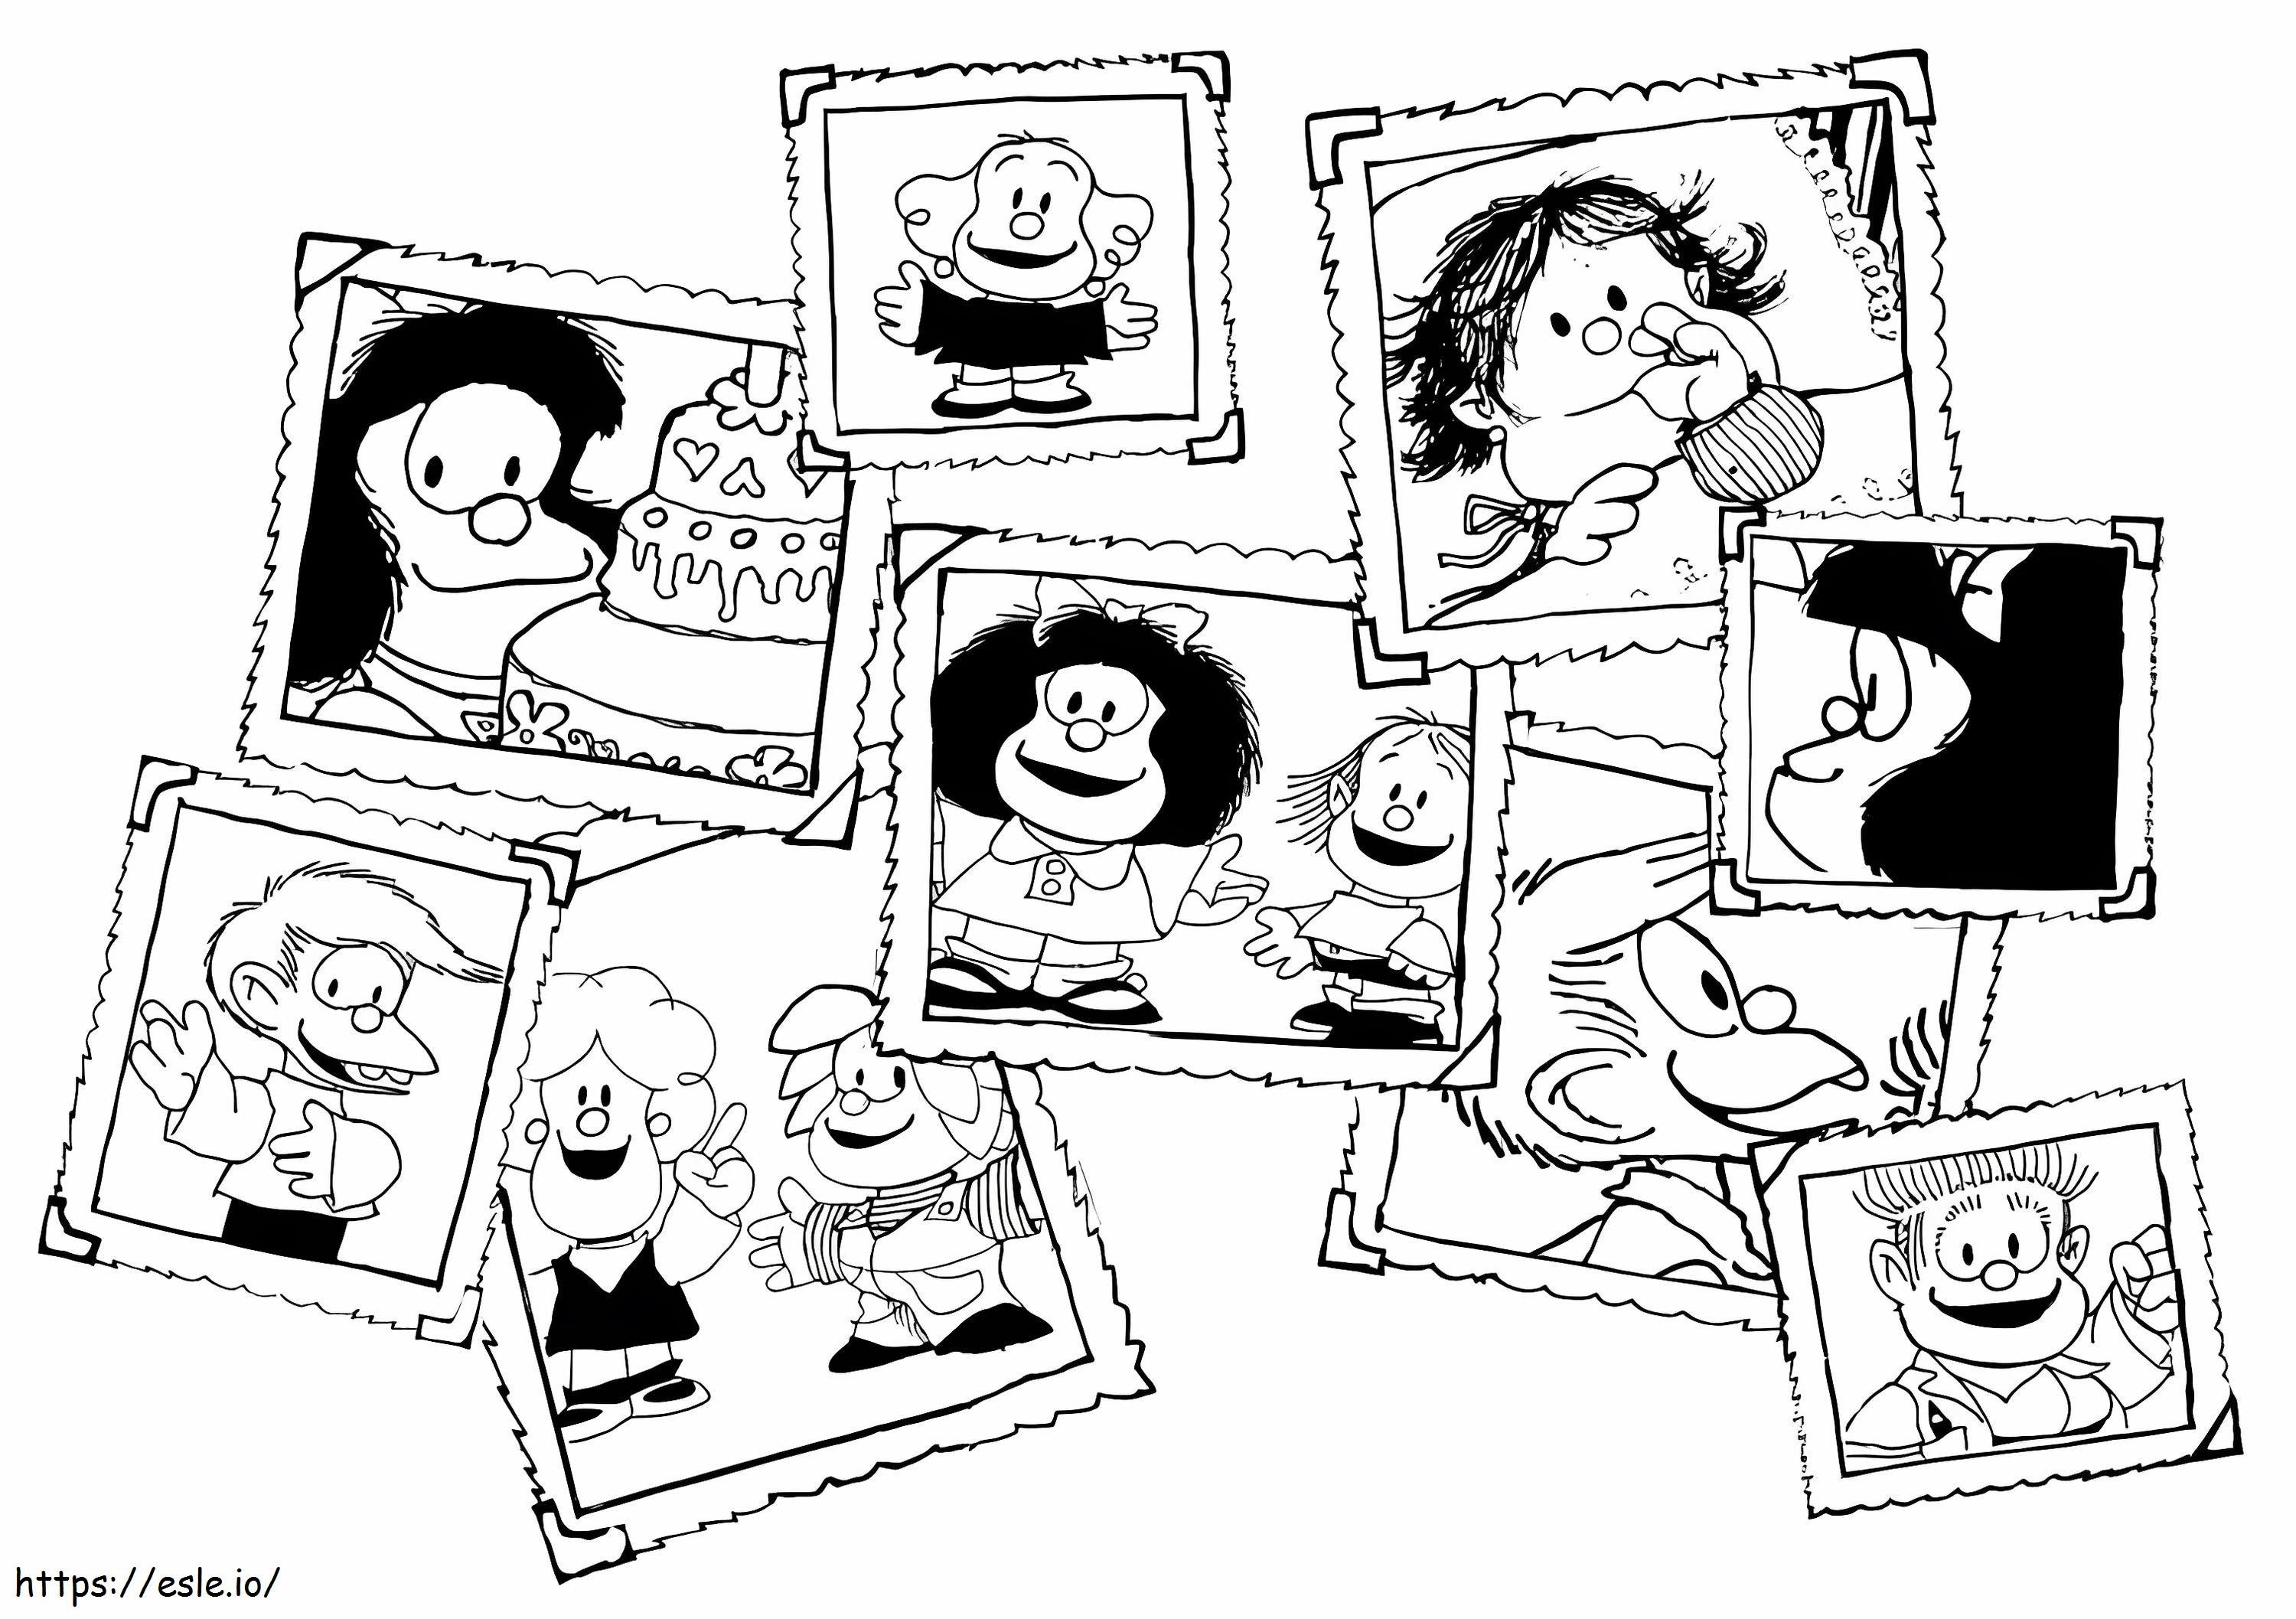 Fotos de Mafalda para colorear